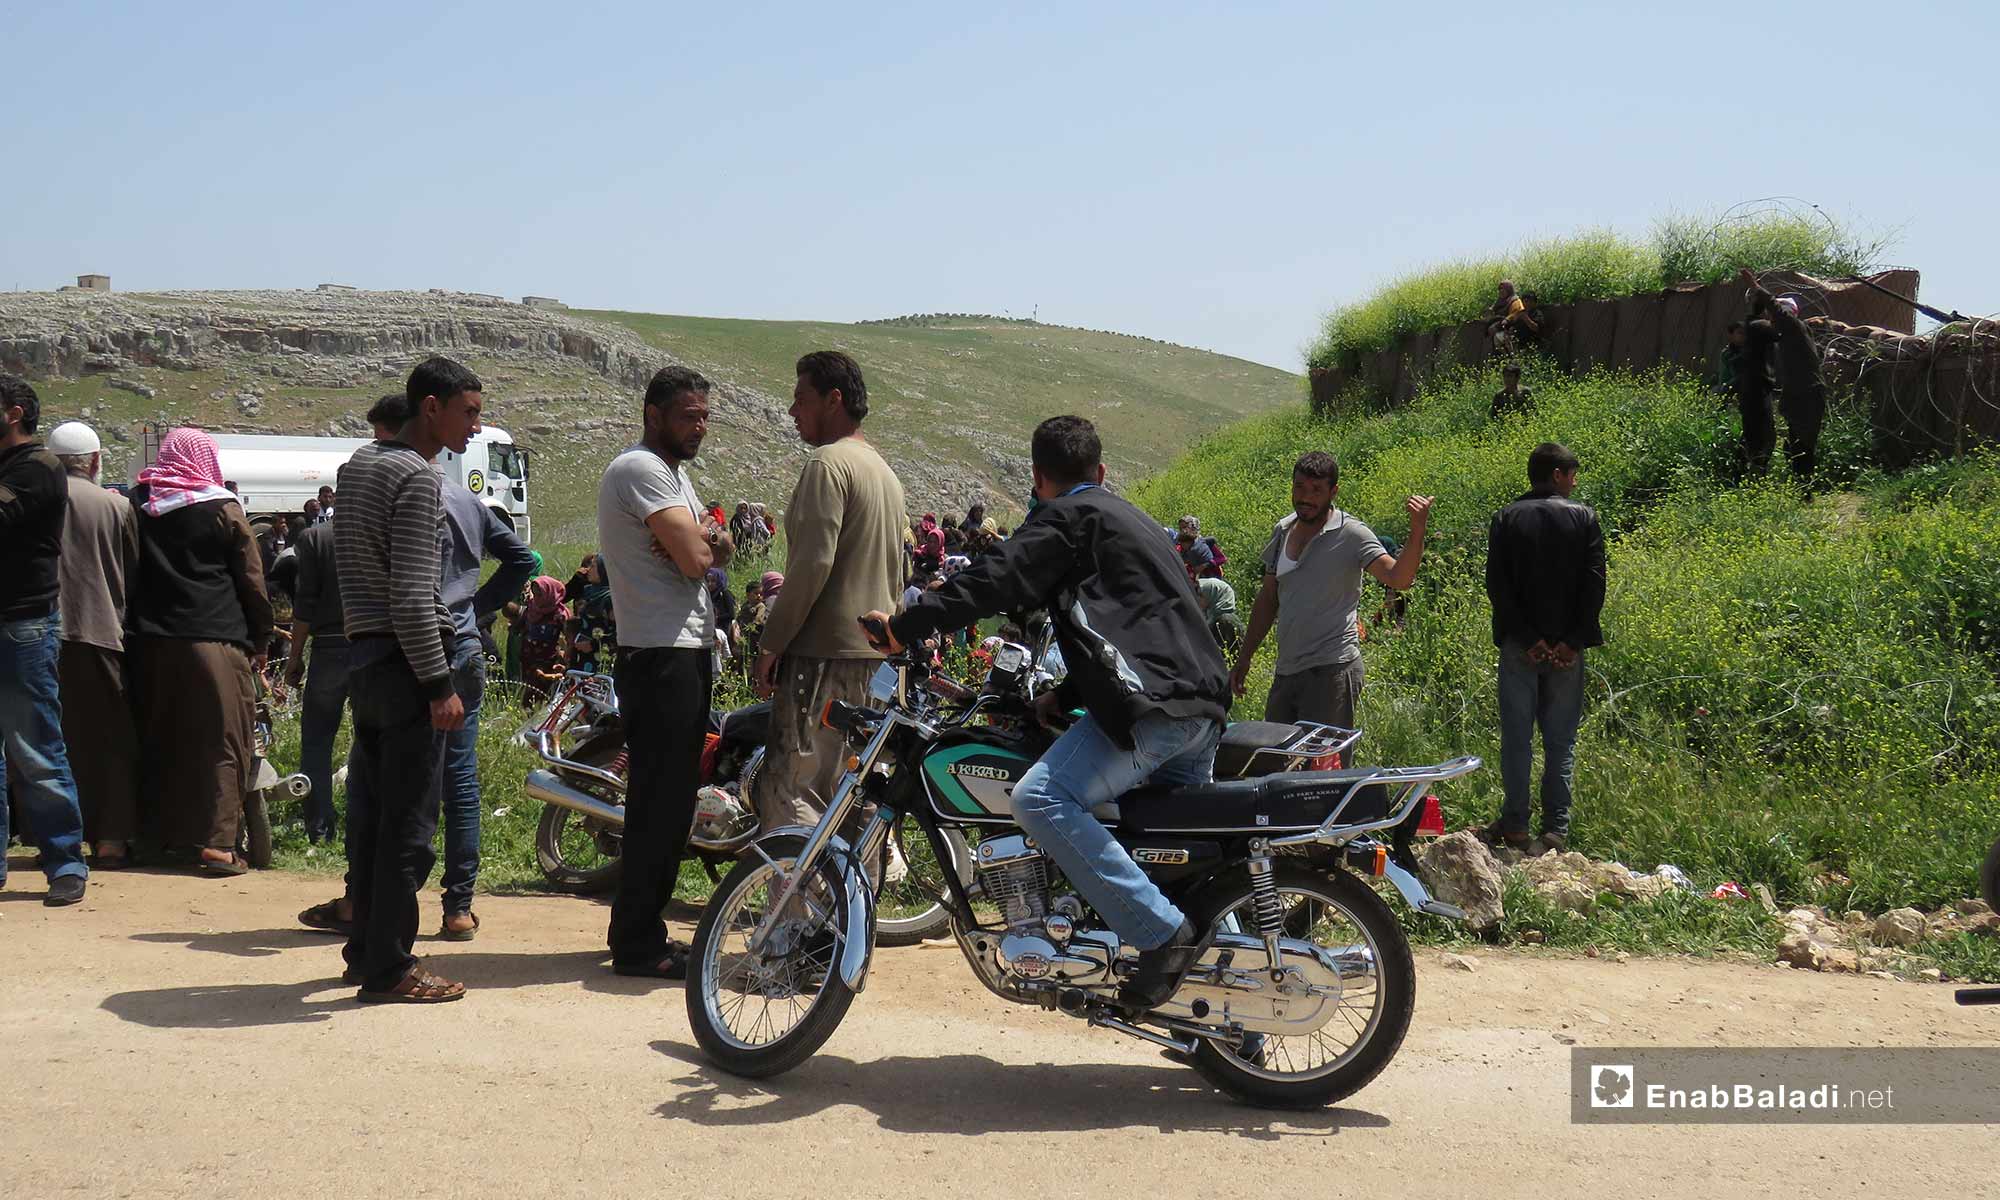 نزوح مدنيين إلى محيط نقطة المراقبة التركية بشير مغار غربي حماة هربًا من القصف 29 نيسان 2019 (عنب بلدي)